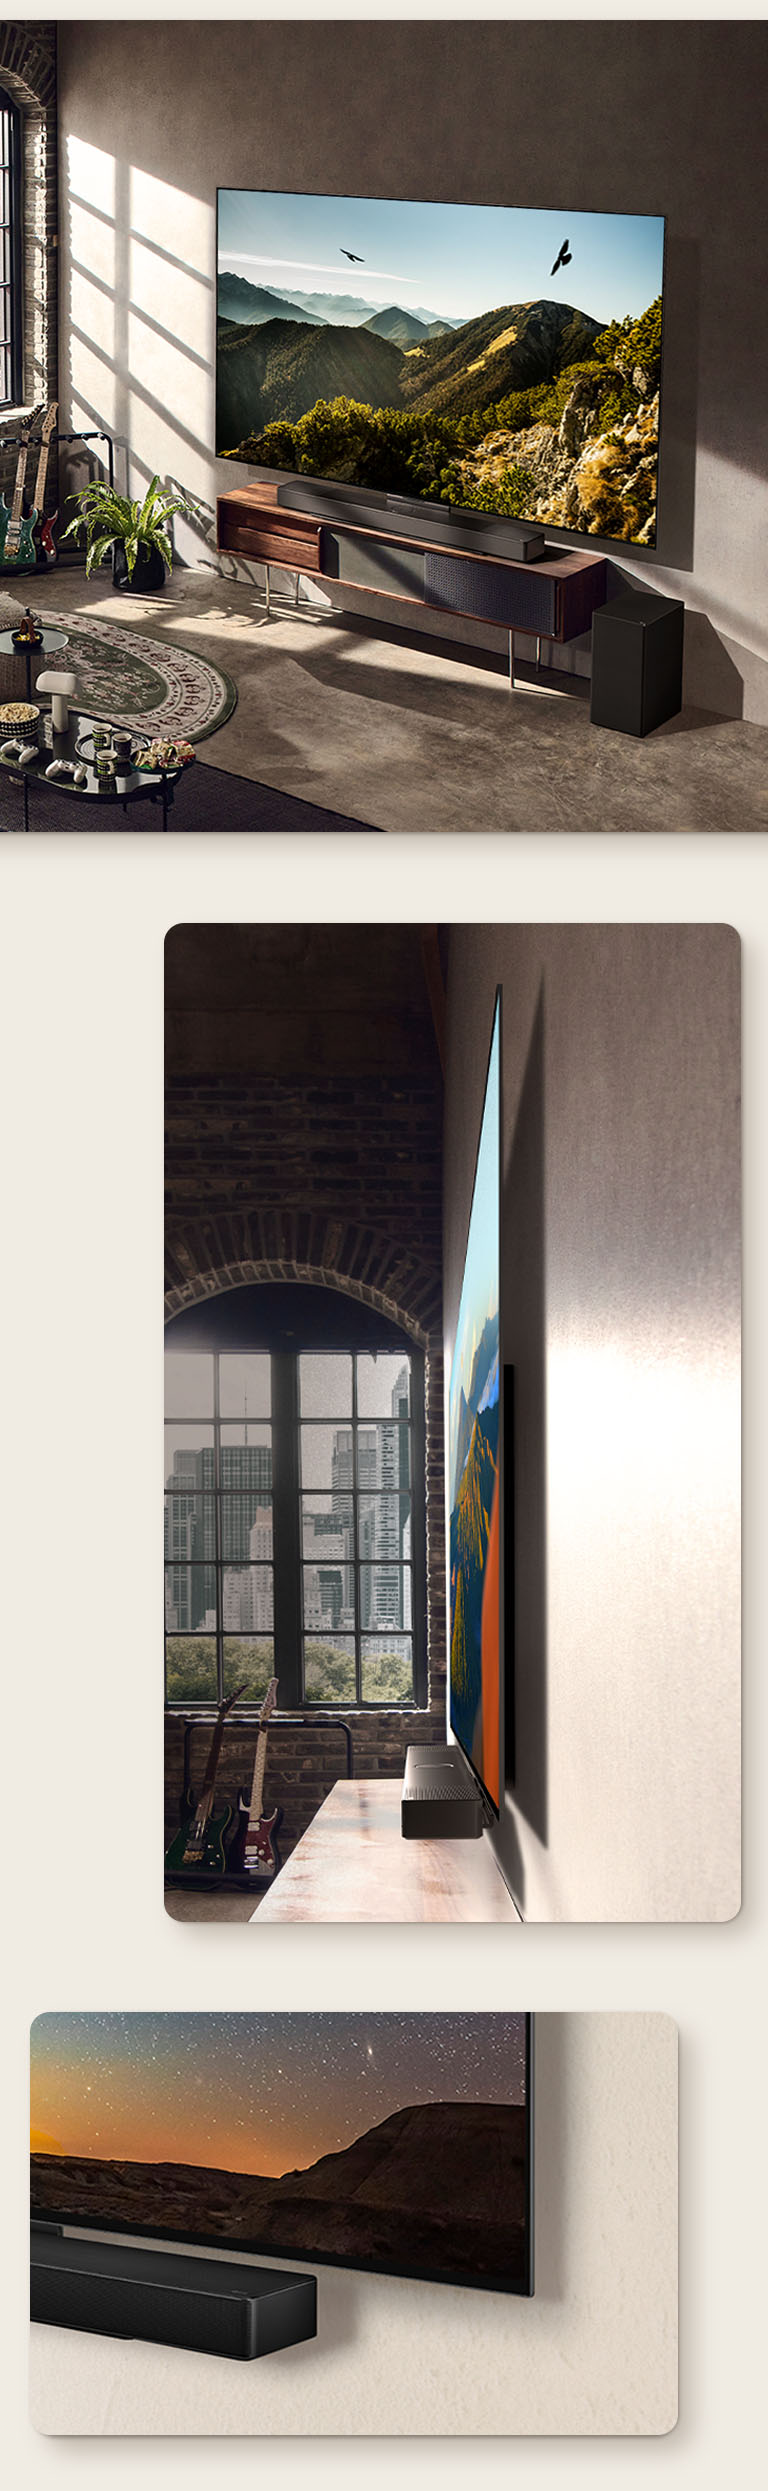 Une image du téléviseur OLED C3 de LG avec une Barre de son sur le mur dans une pièce artistique. Une vue latérale des dimensions fines du téléviseur OLED C3 de LG devant une fenêtre donnant sur un paysage urbain. Le coin inférieur du téléviseur OLED C3 de LG et de la Barre de son.